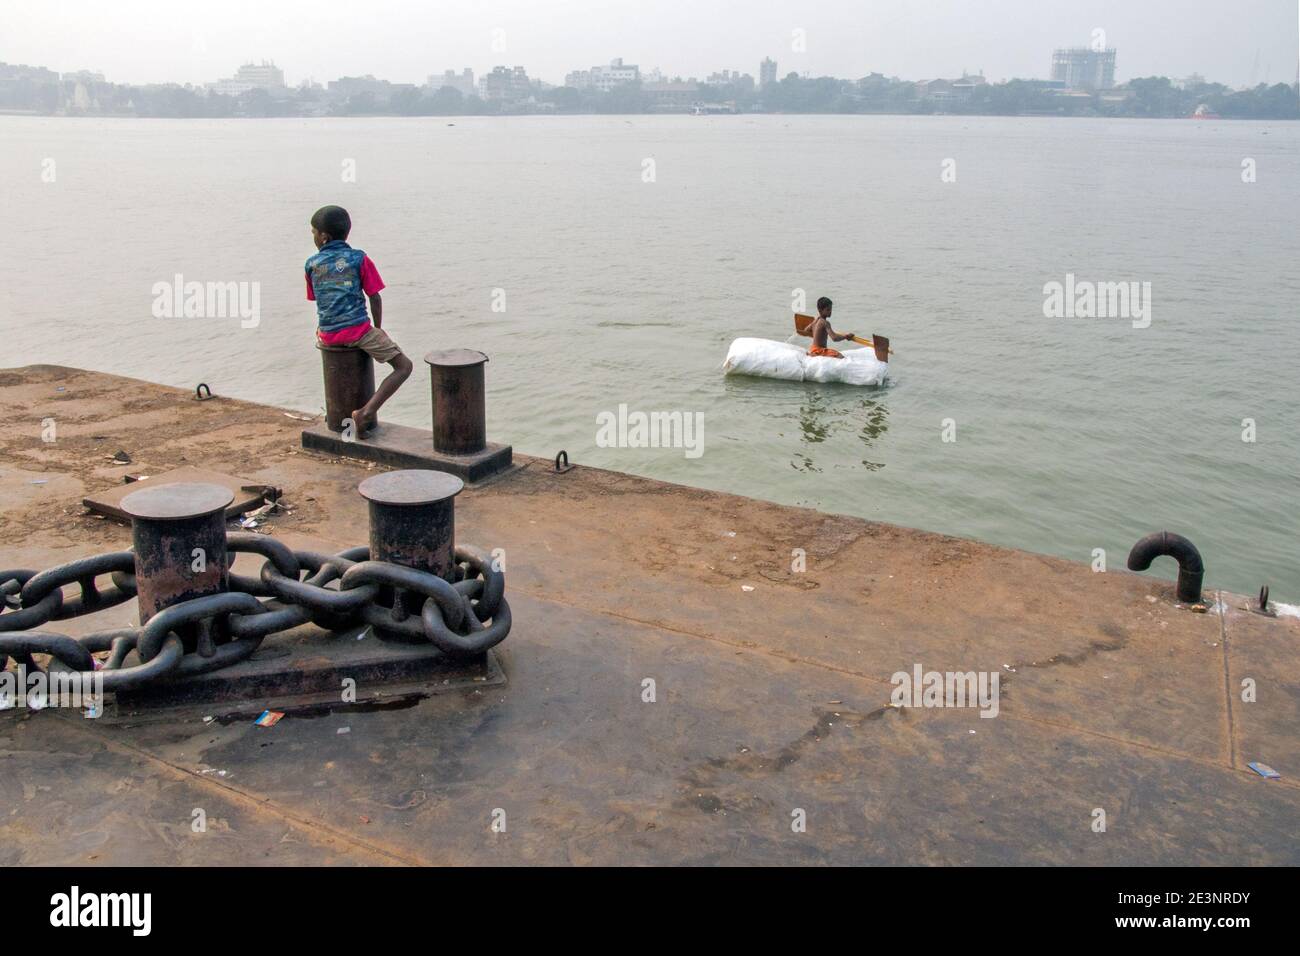 Un bébé voyage en radeau sur le fleuve Ganges à Kolkata. Voyager sur ce radeau n'est qu'une partie de l'enfance. Banque D'Images